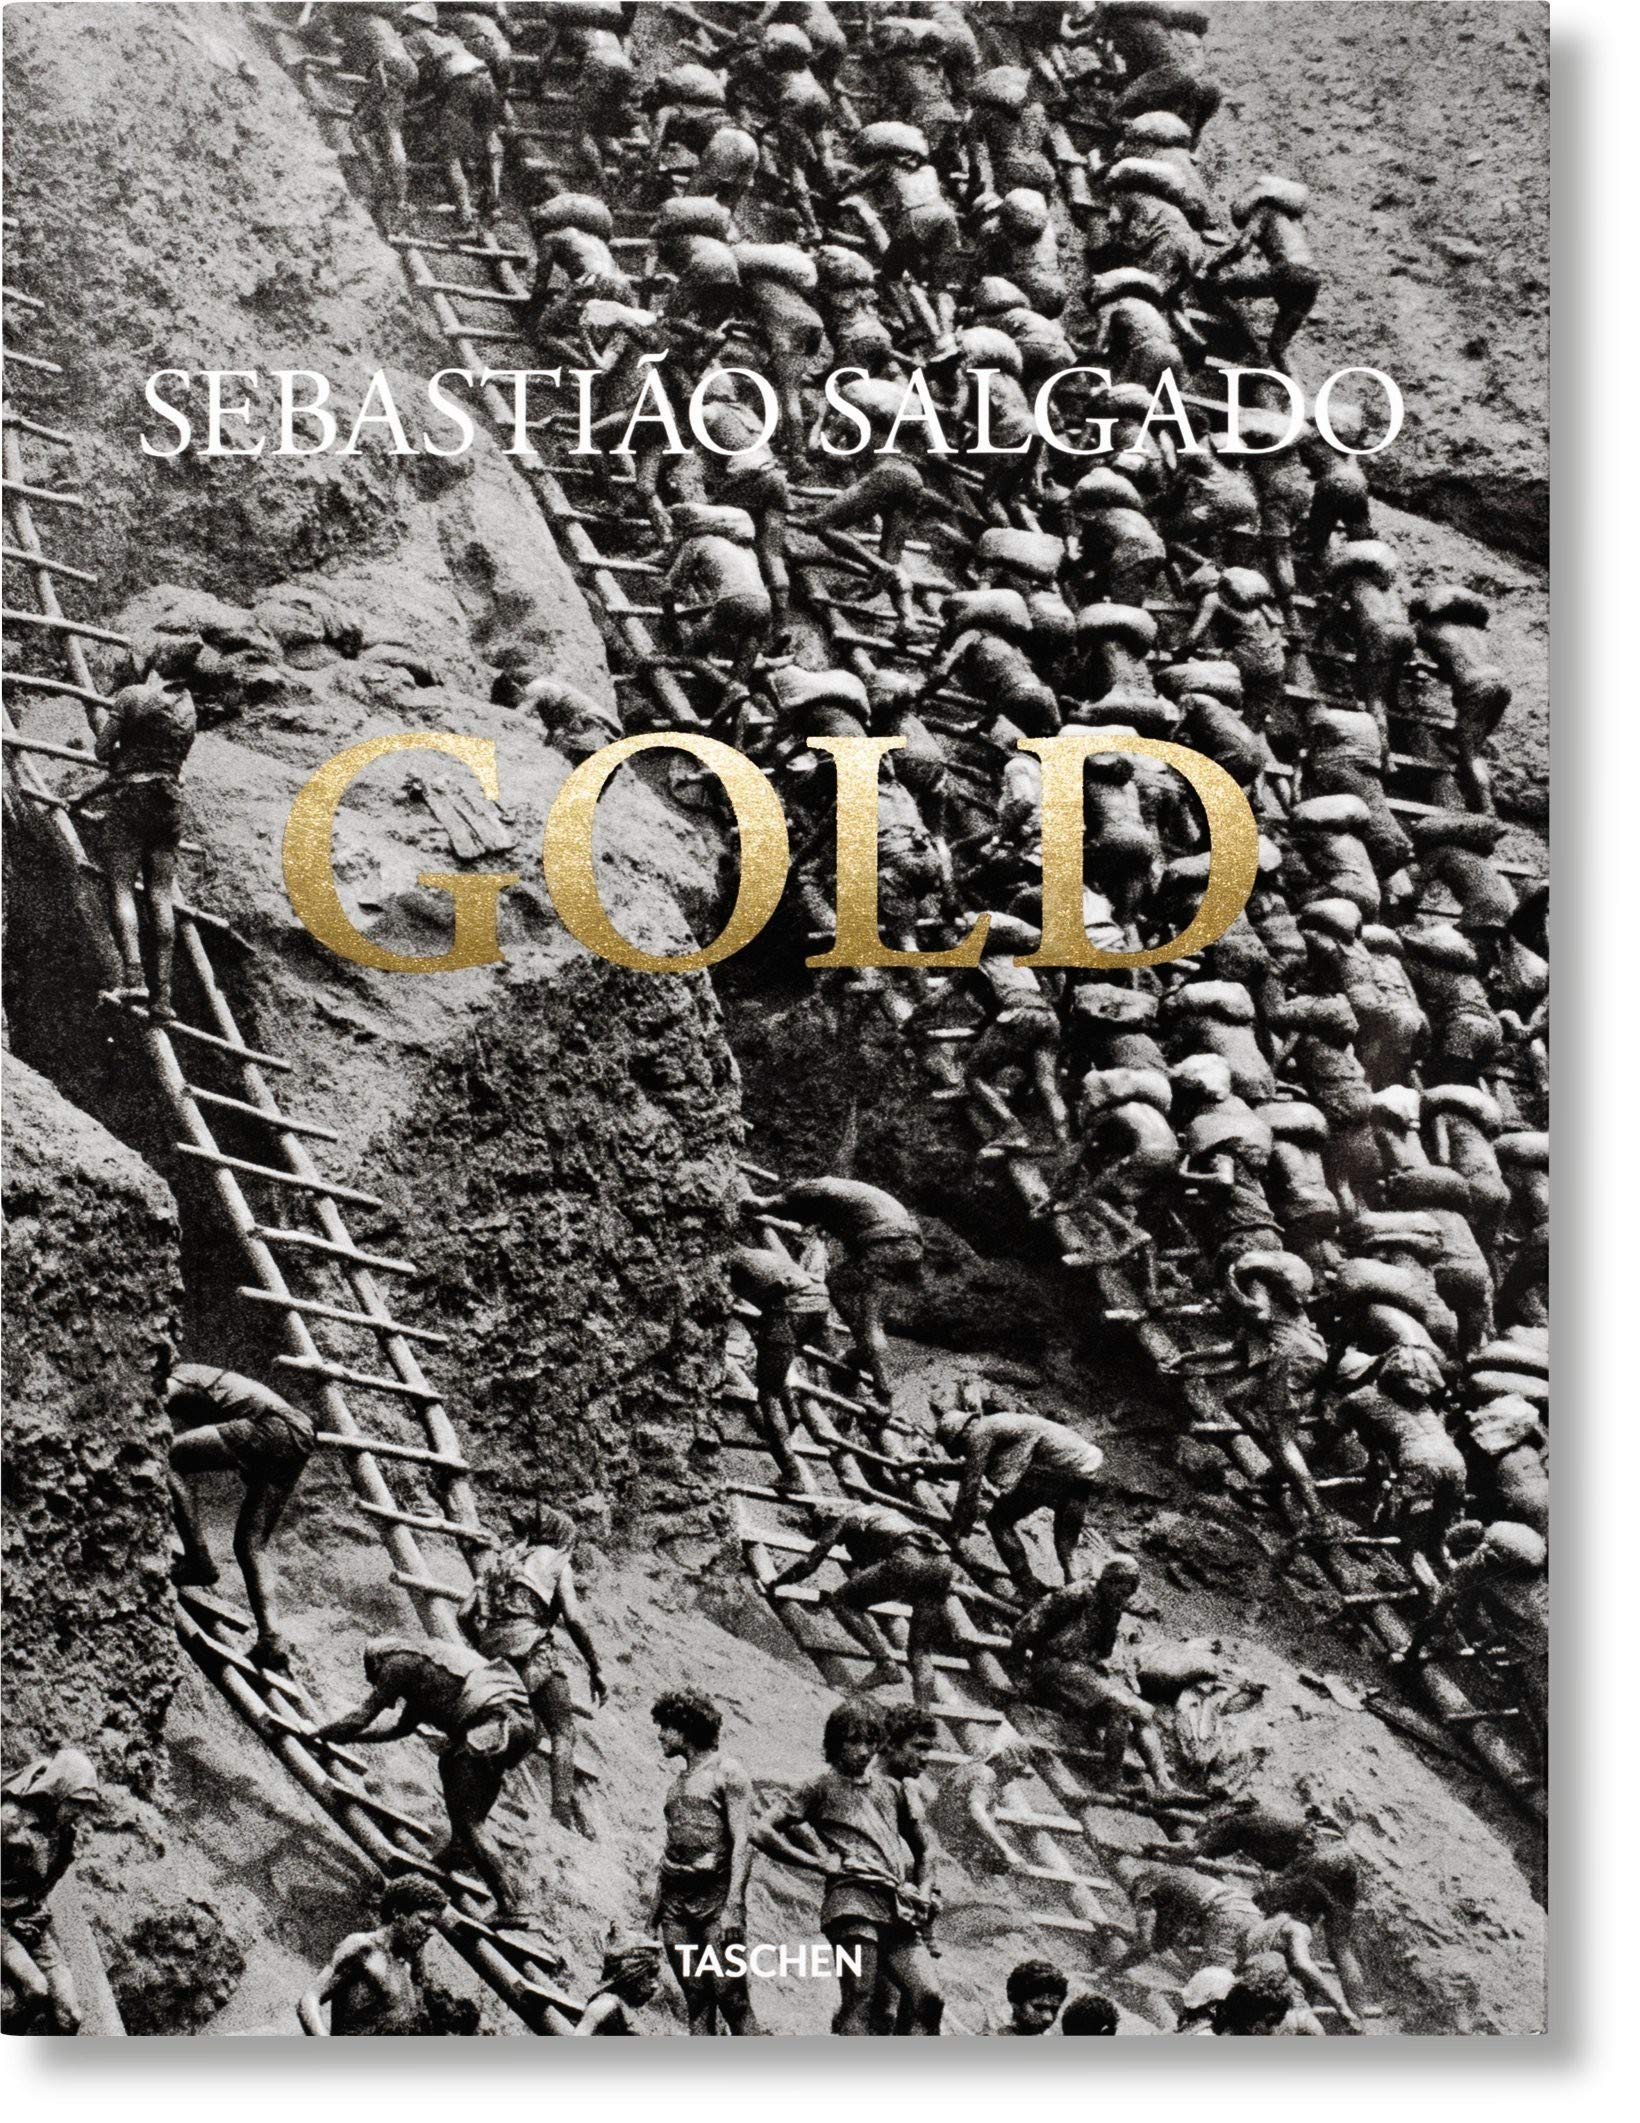 Sebastiano Salgado: Gold